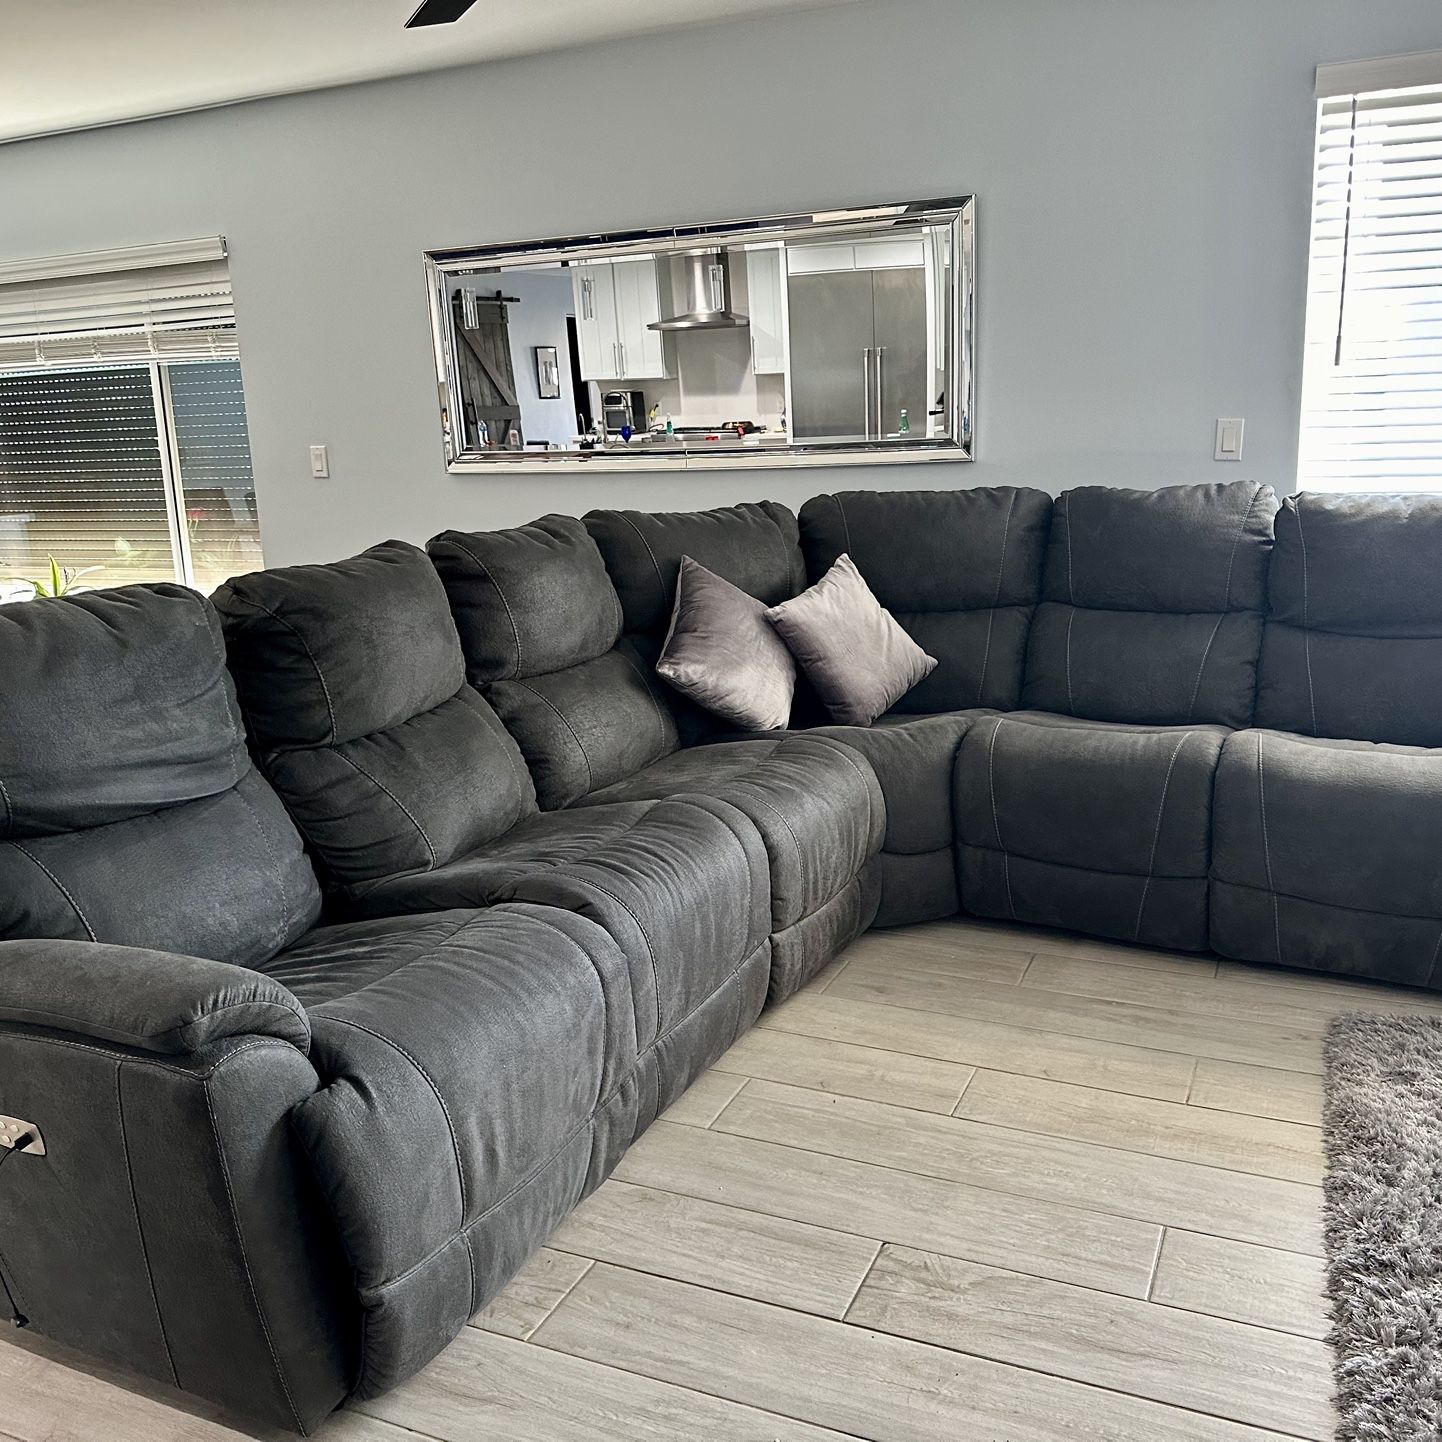 La-Z-Boy Trouper Sectional Couch Condition: Excellent 